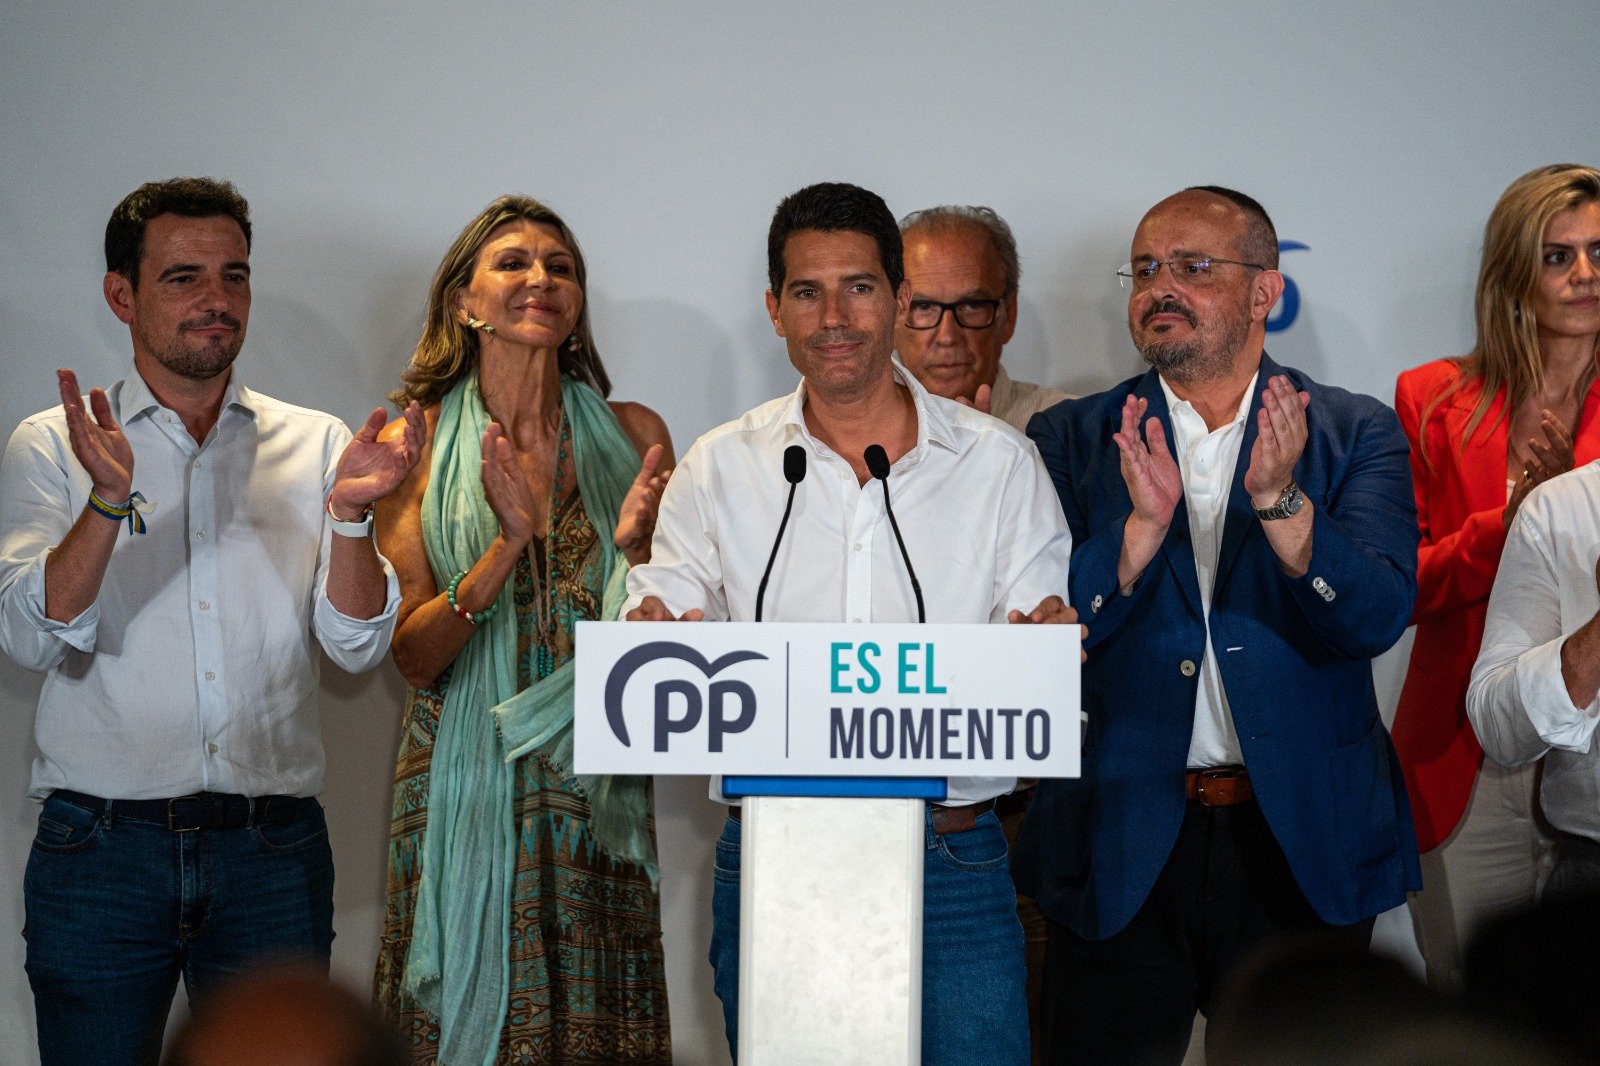 Resultado agridulce para el PP en Catalunya: triplica escaños a pesar de la incógnita de la gobernabilidad